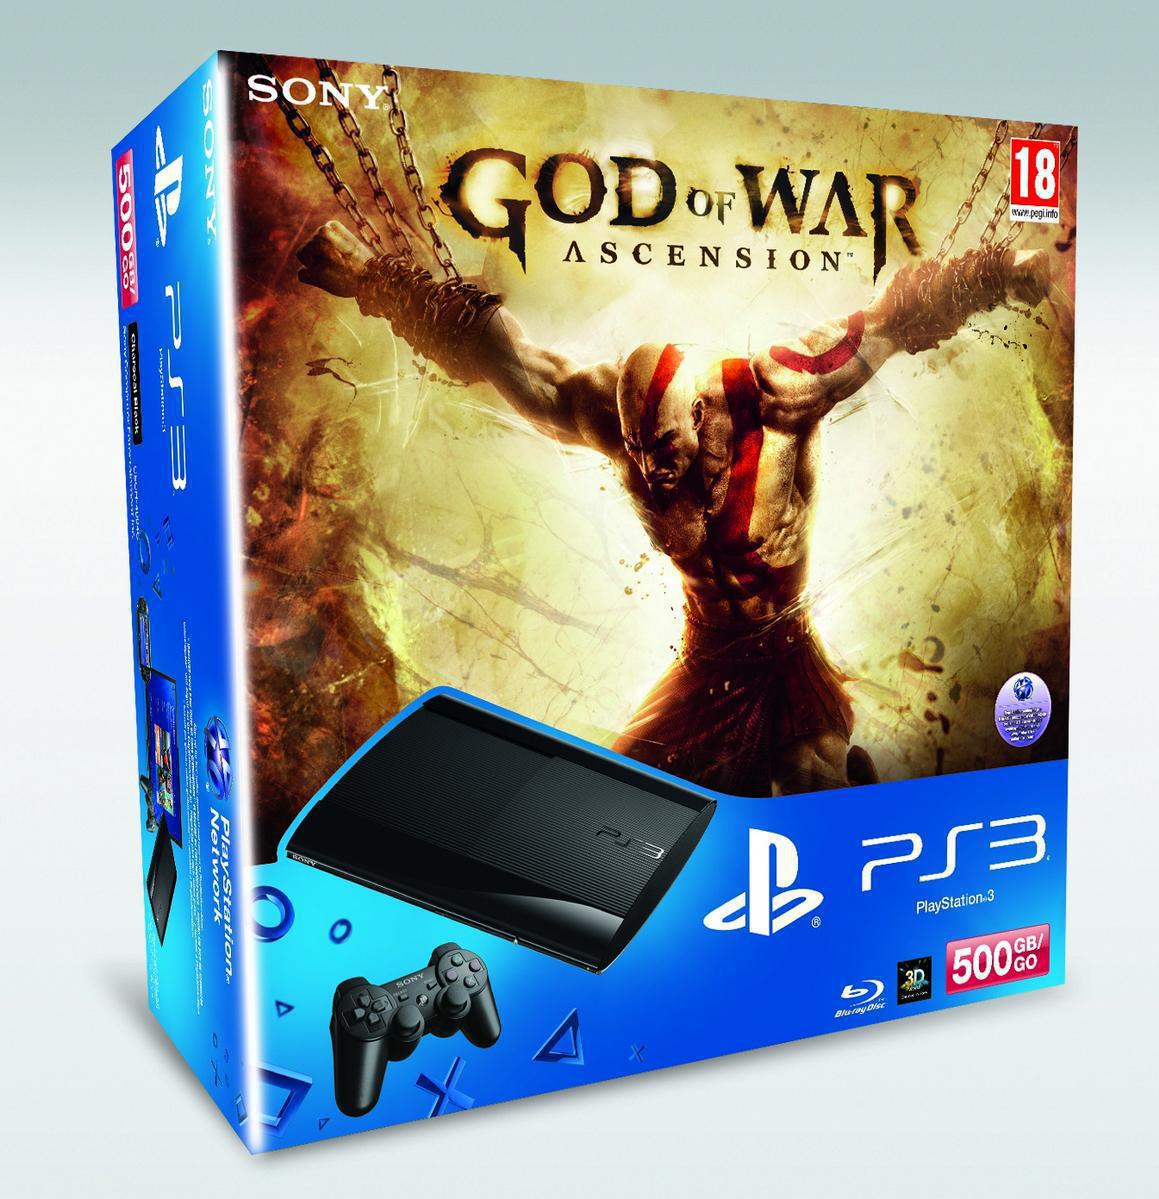 PlayStation 3 Super Slim 500 GB God of War Ascension Bundle - PlayStation 3 Gépek